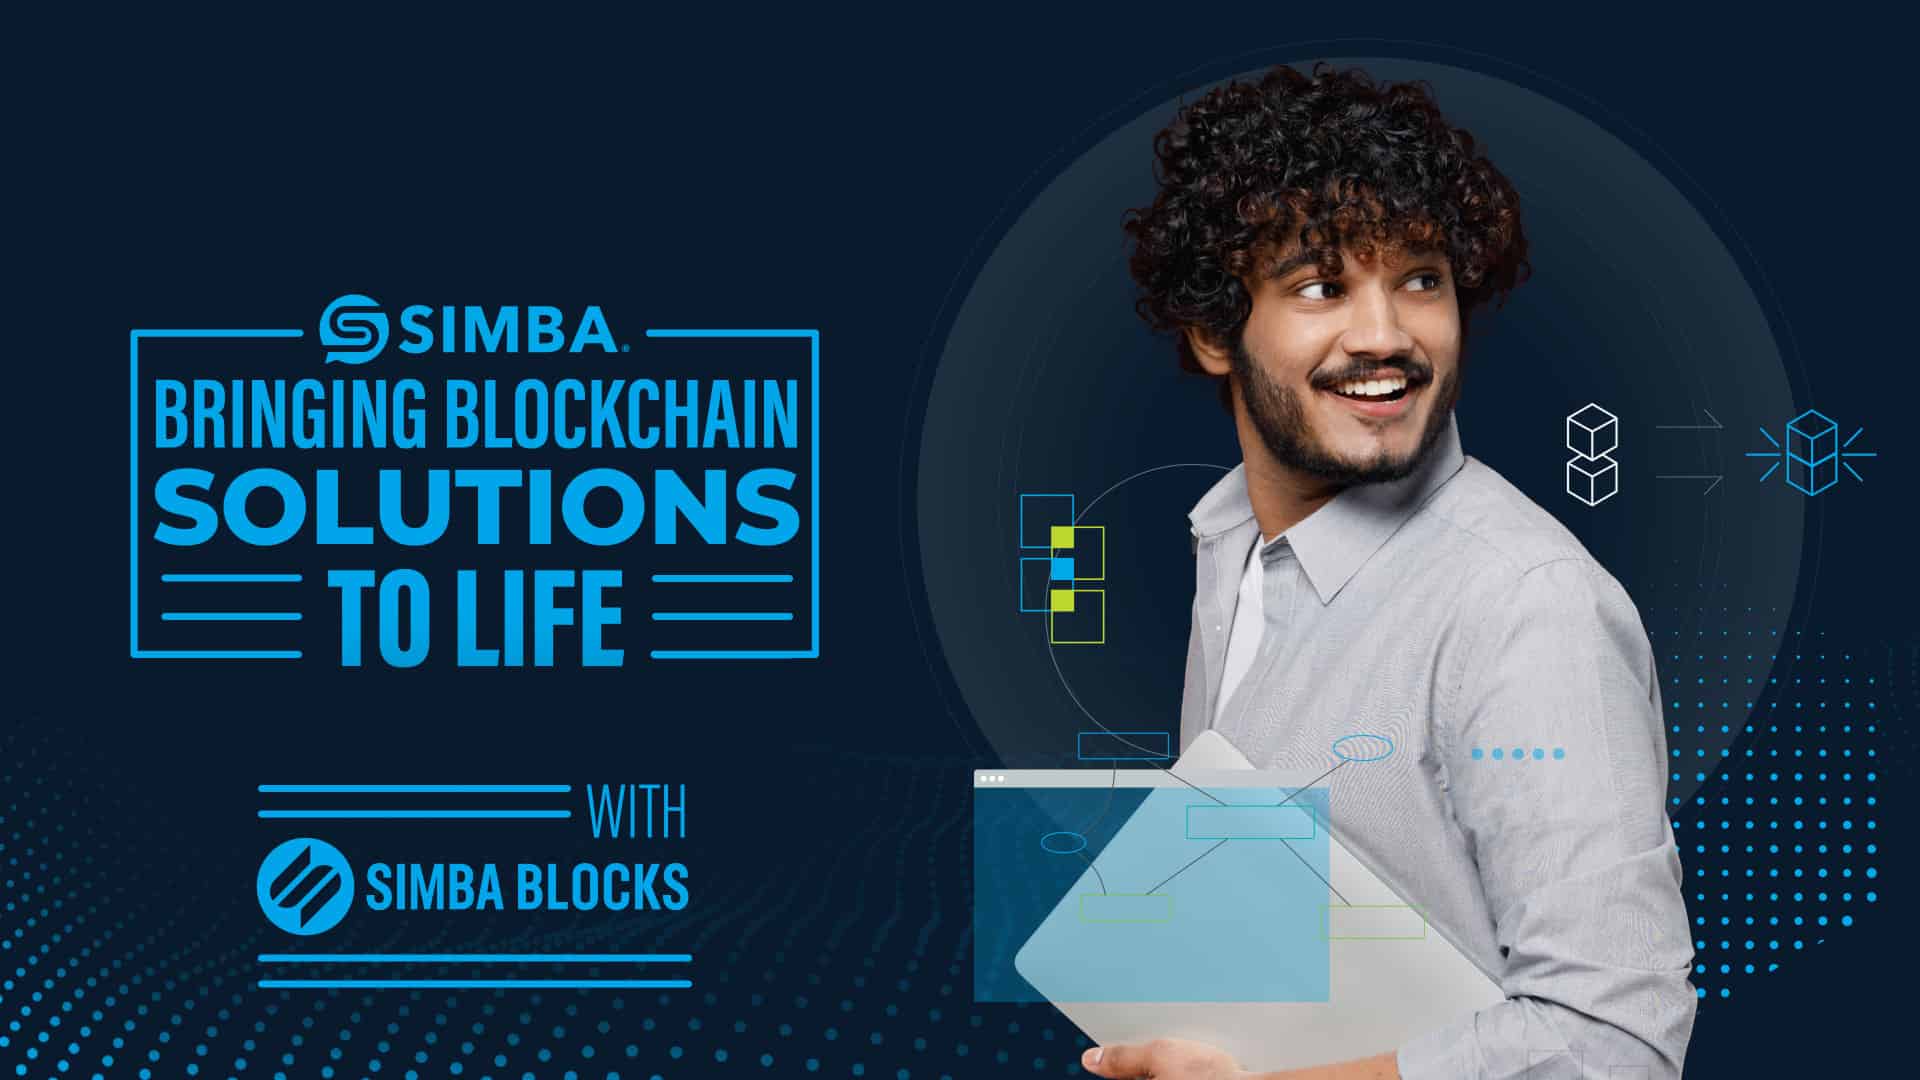 SIMBA Chain Erleichtert das Bauen auf der Blockchain mit SIMBA-Blöcken